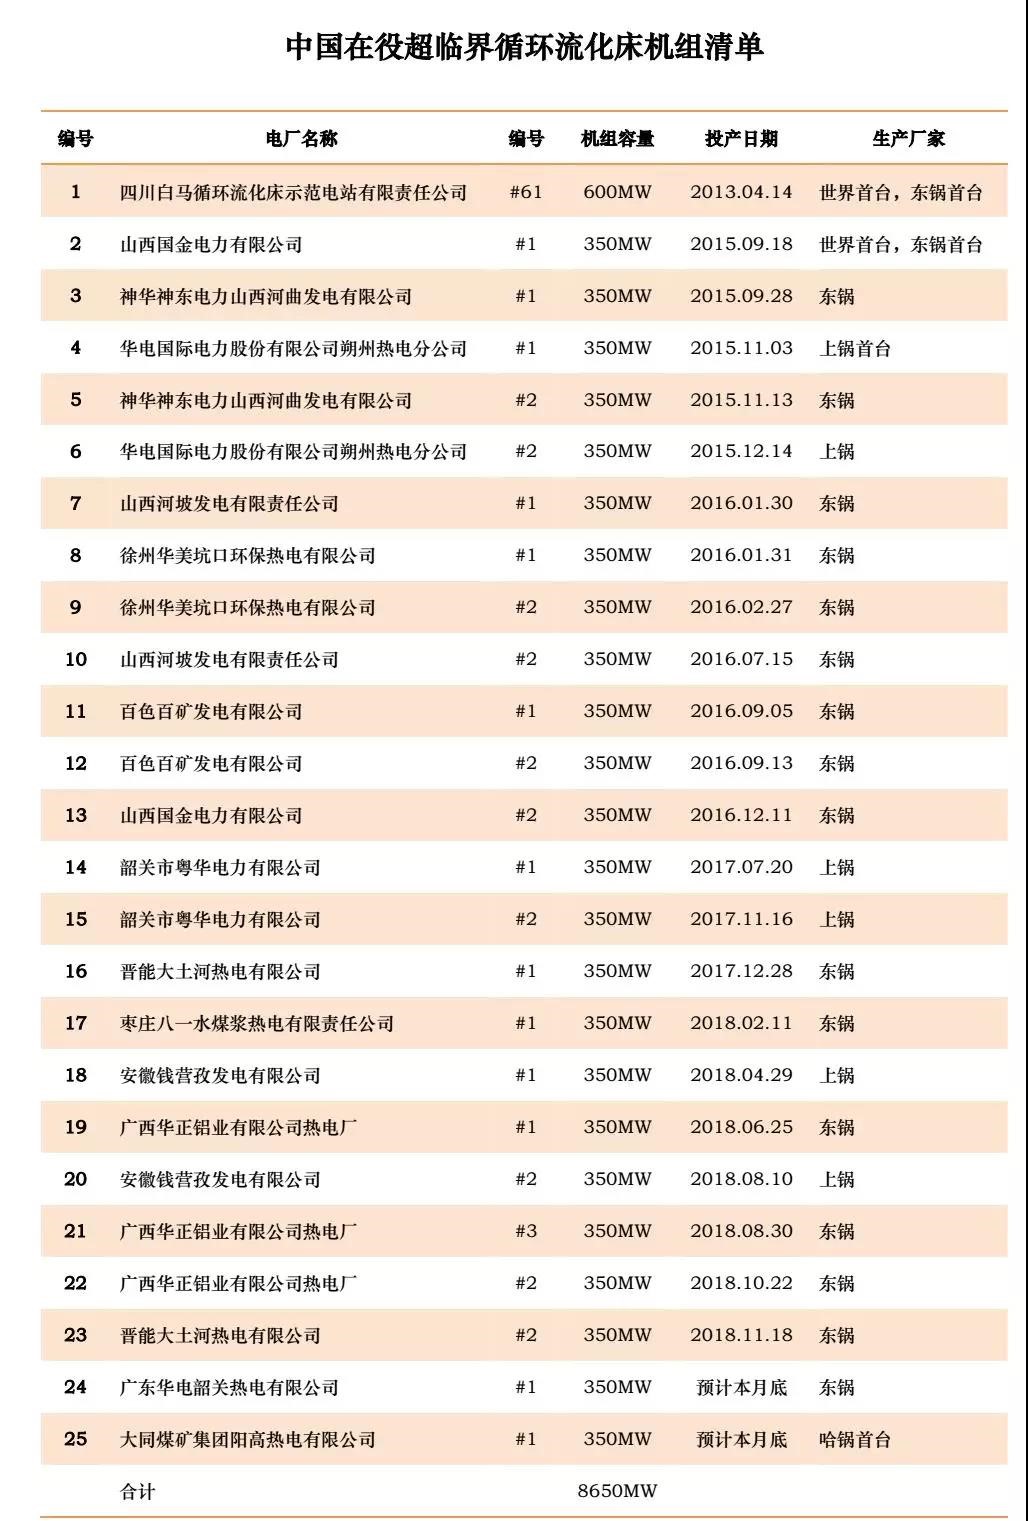 中国在役超临界循环流化床机组清单